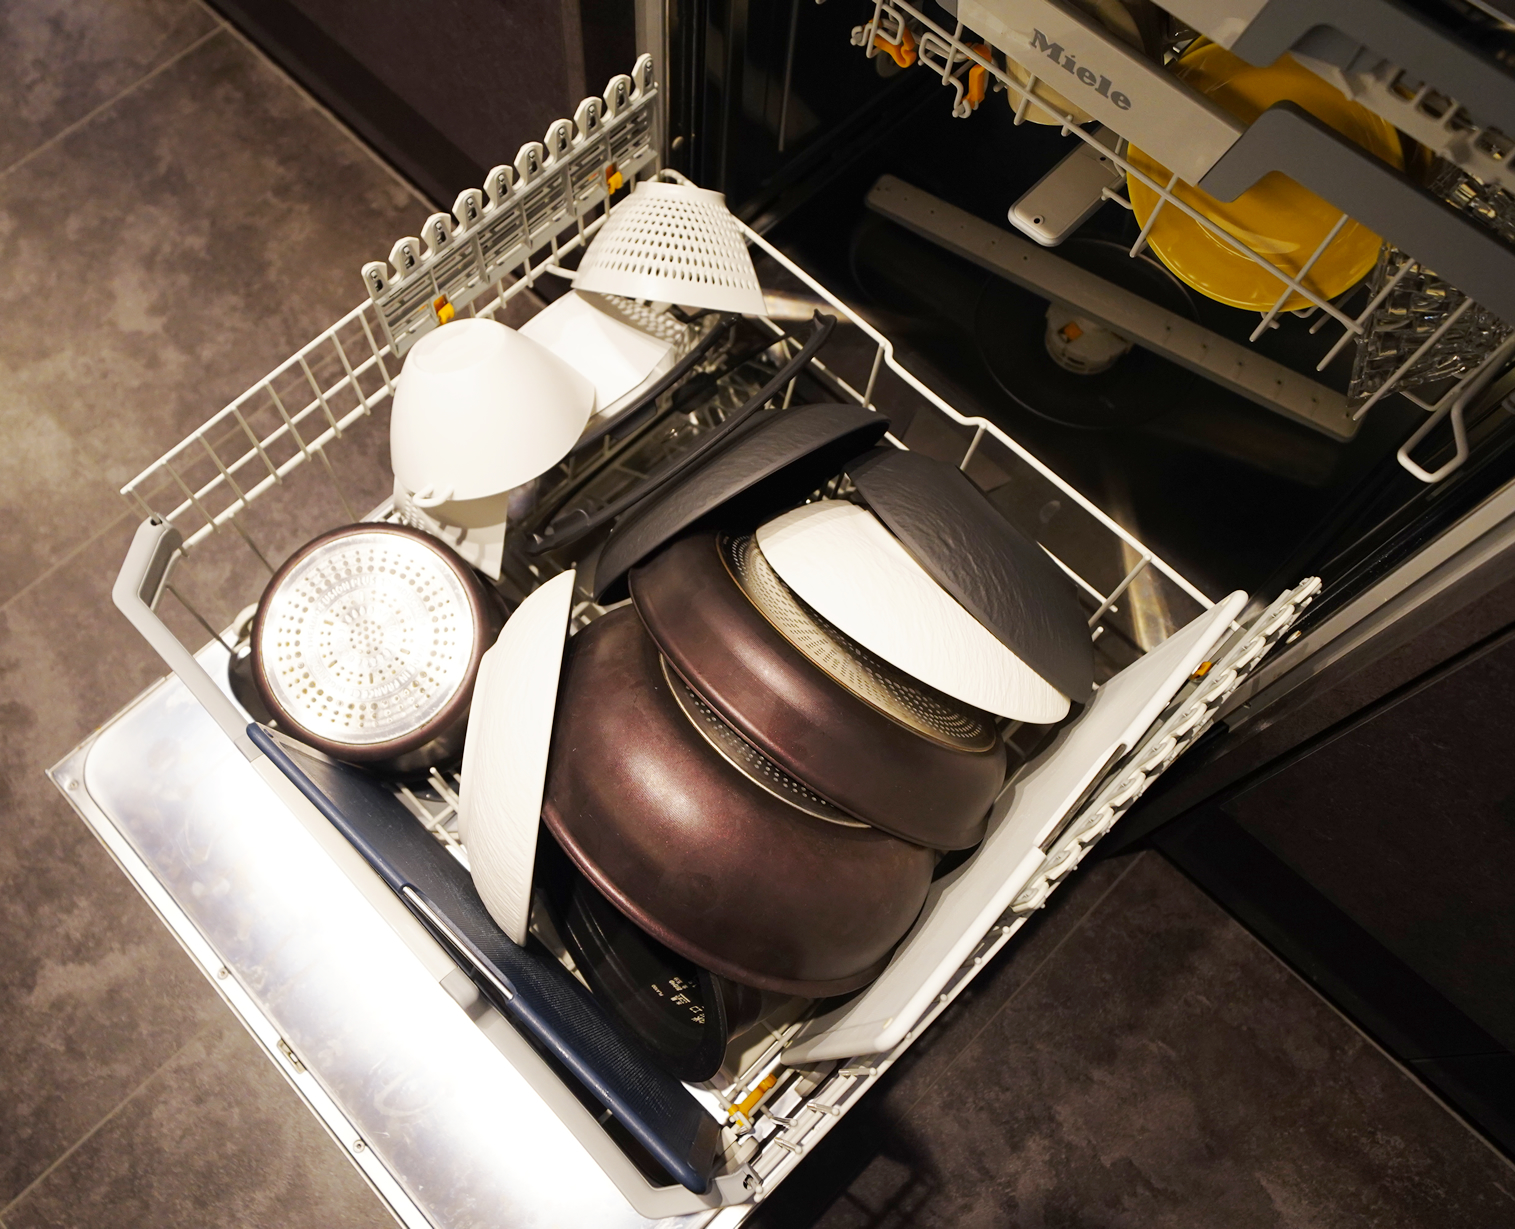 ミーレ社製の食洗器は、食器類の出し入れ、容量、洗浄力等、導入してよかったと思う設備No.1です。